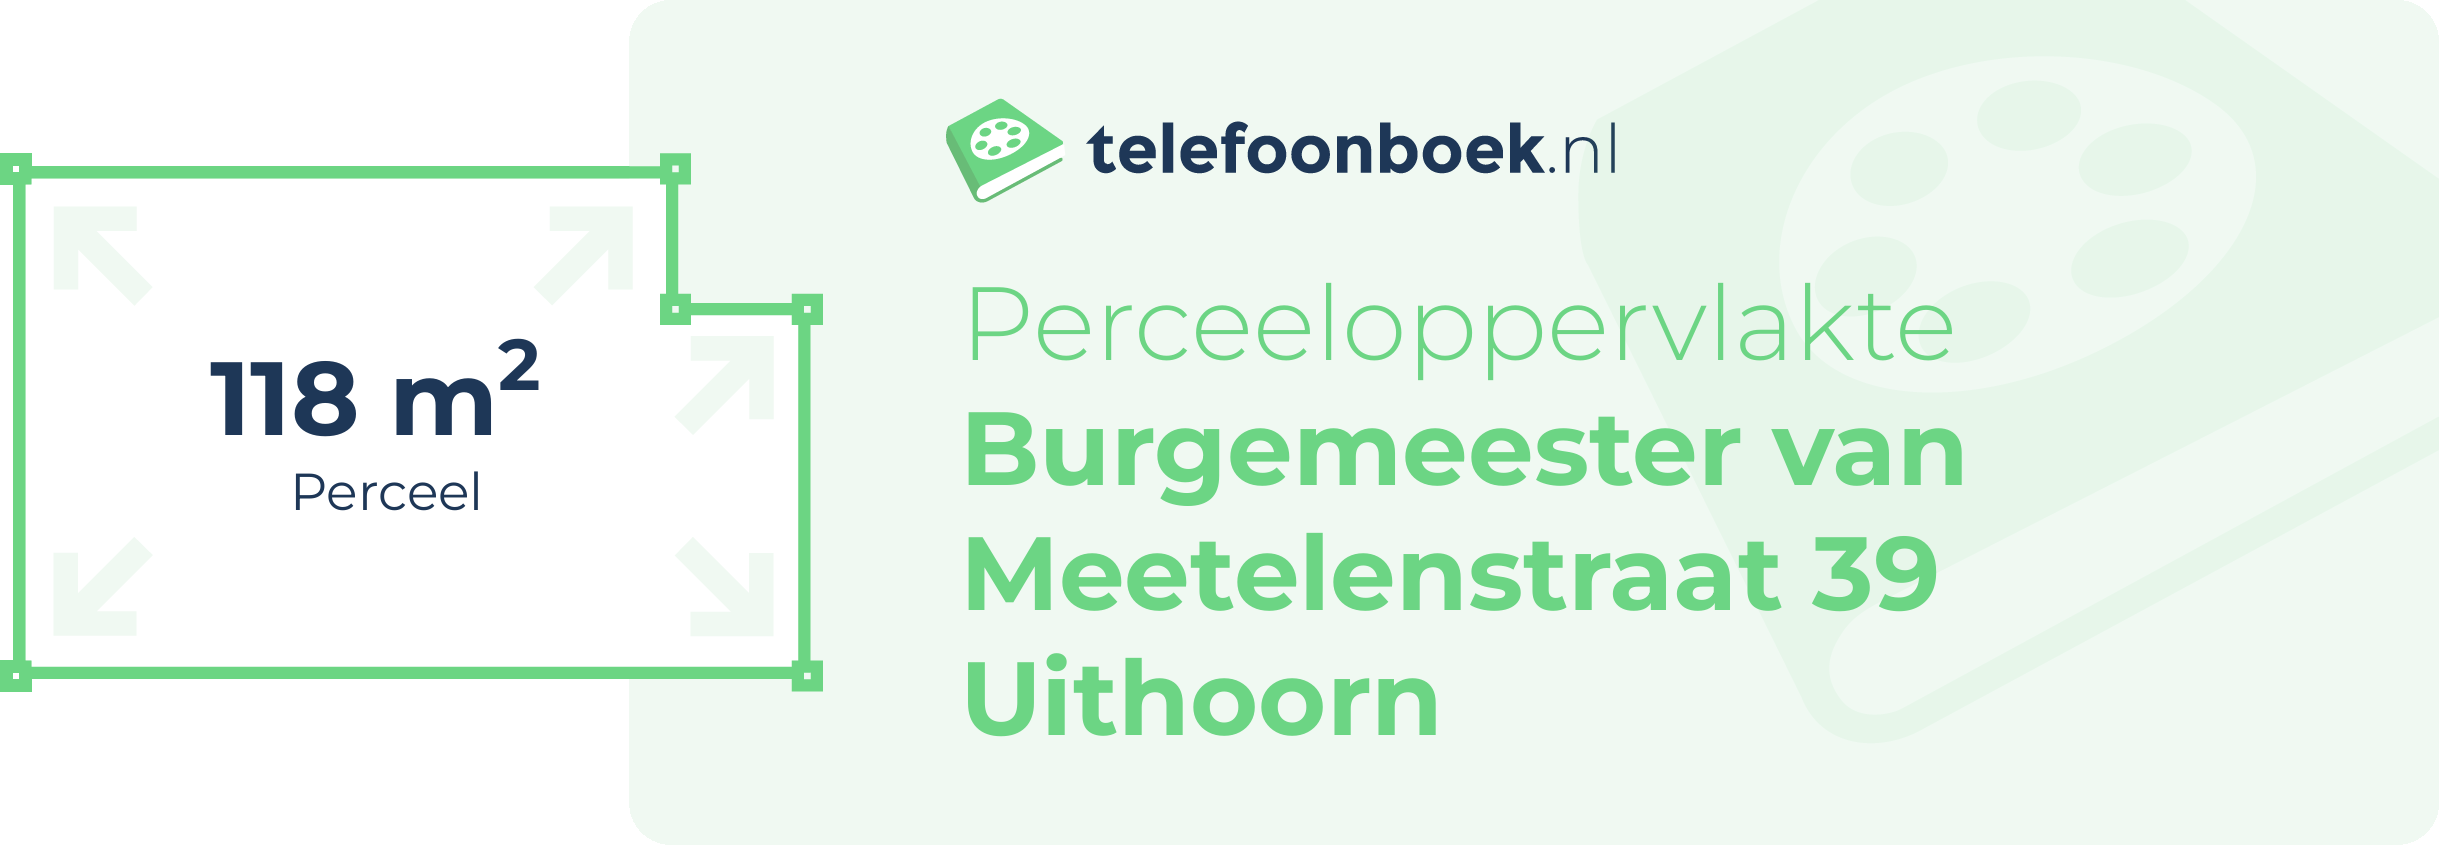 Perceeloppervlakte Burgemeester Van Meetelenstraat 39 Uithoorn